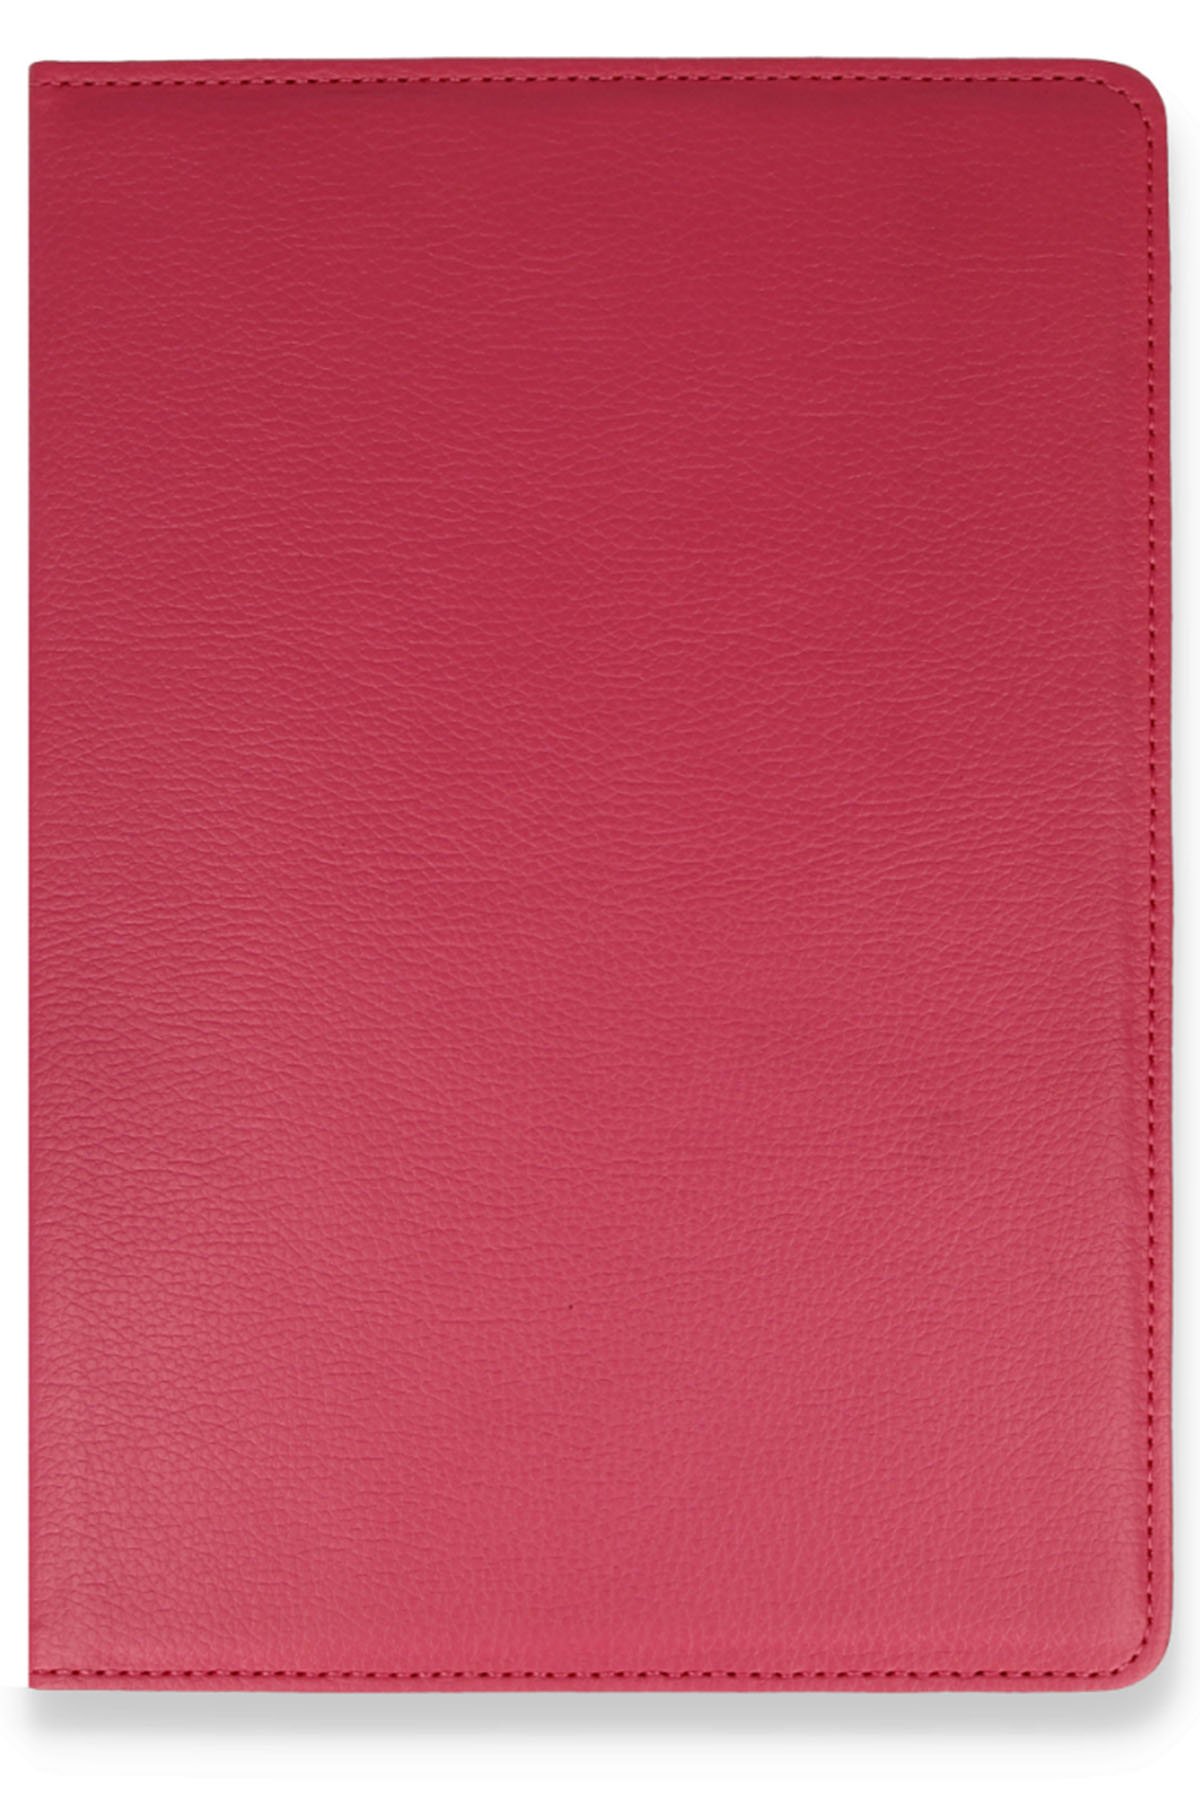 Newface iPad 3 9.7 Kılıf 360 Tablet Deri Kılıf - Kırmızı